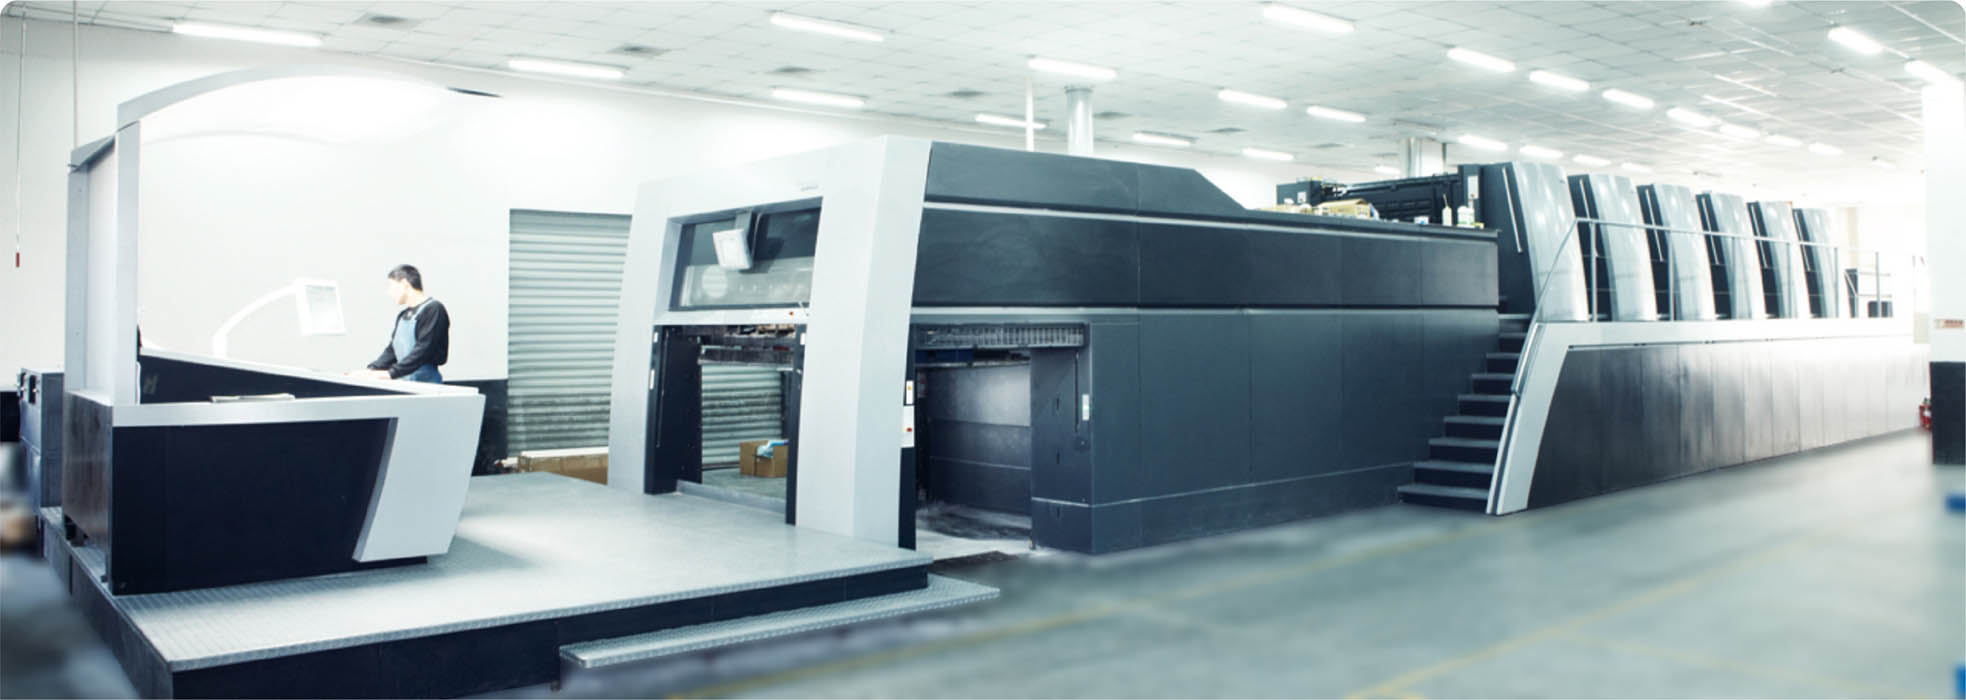 联盛集团率先引进亚洲首台海德堡全开六色印刷机XL145-6+L 